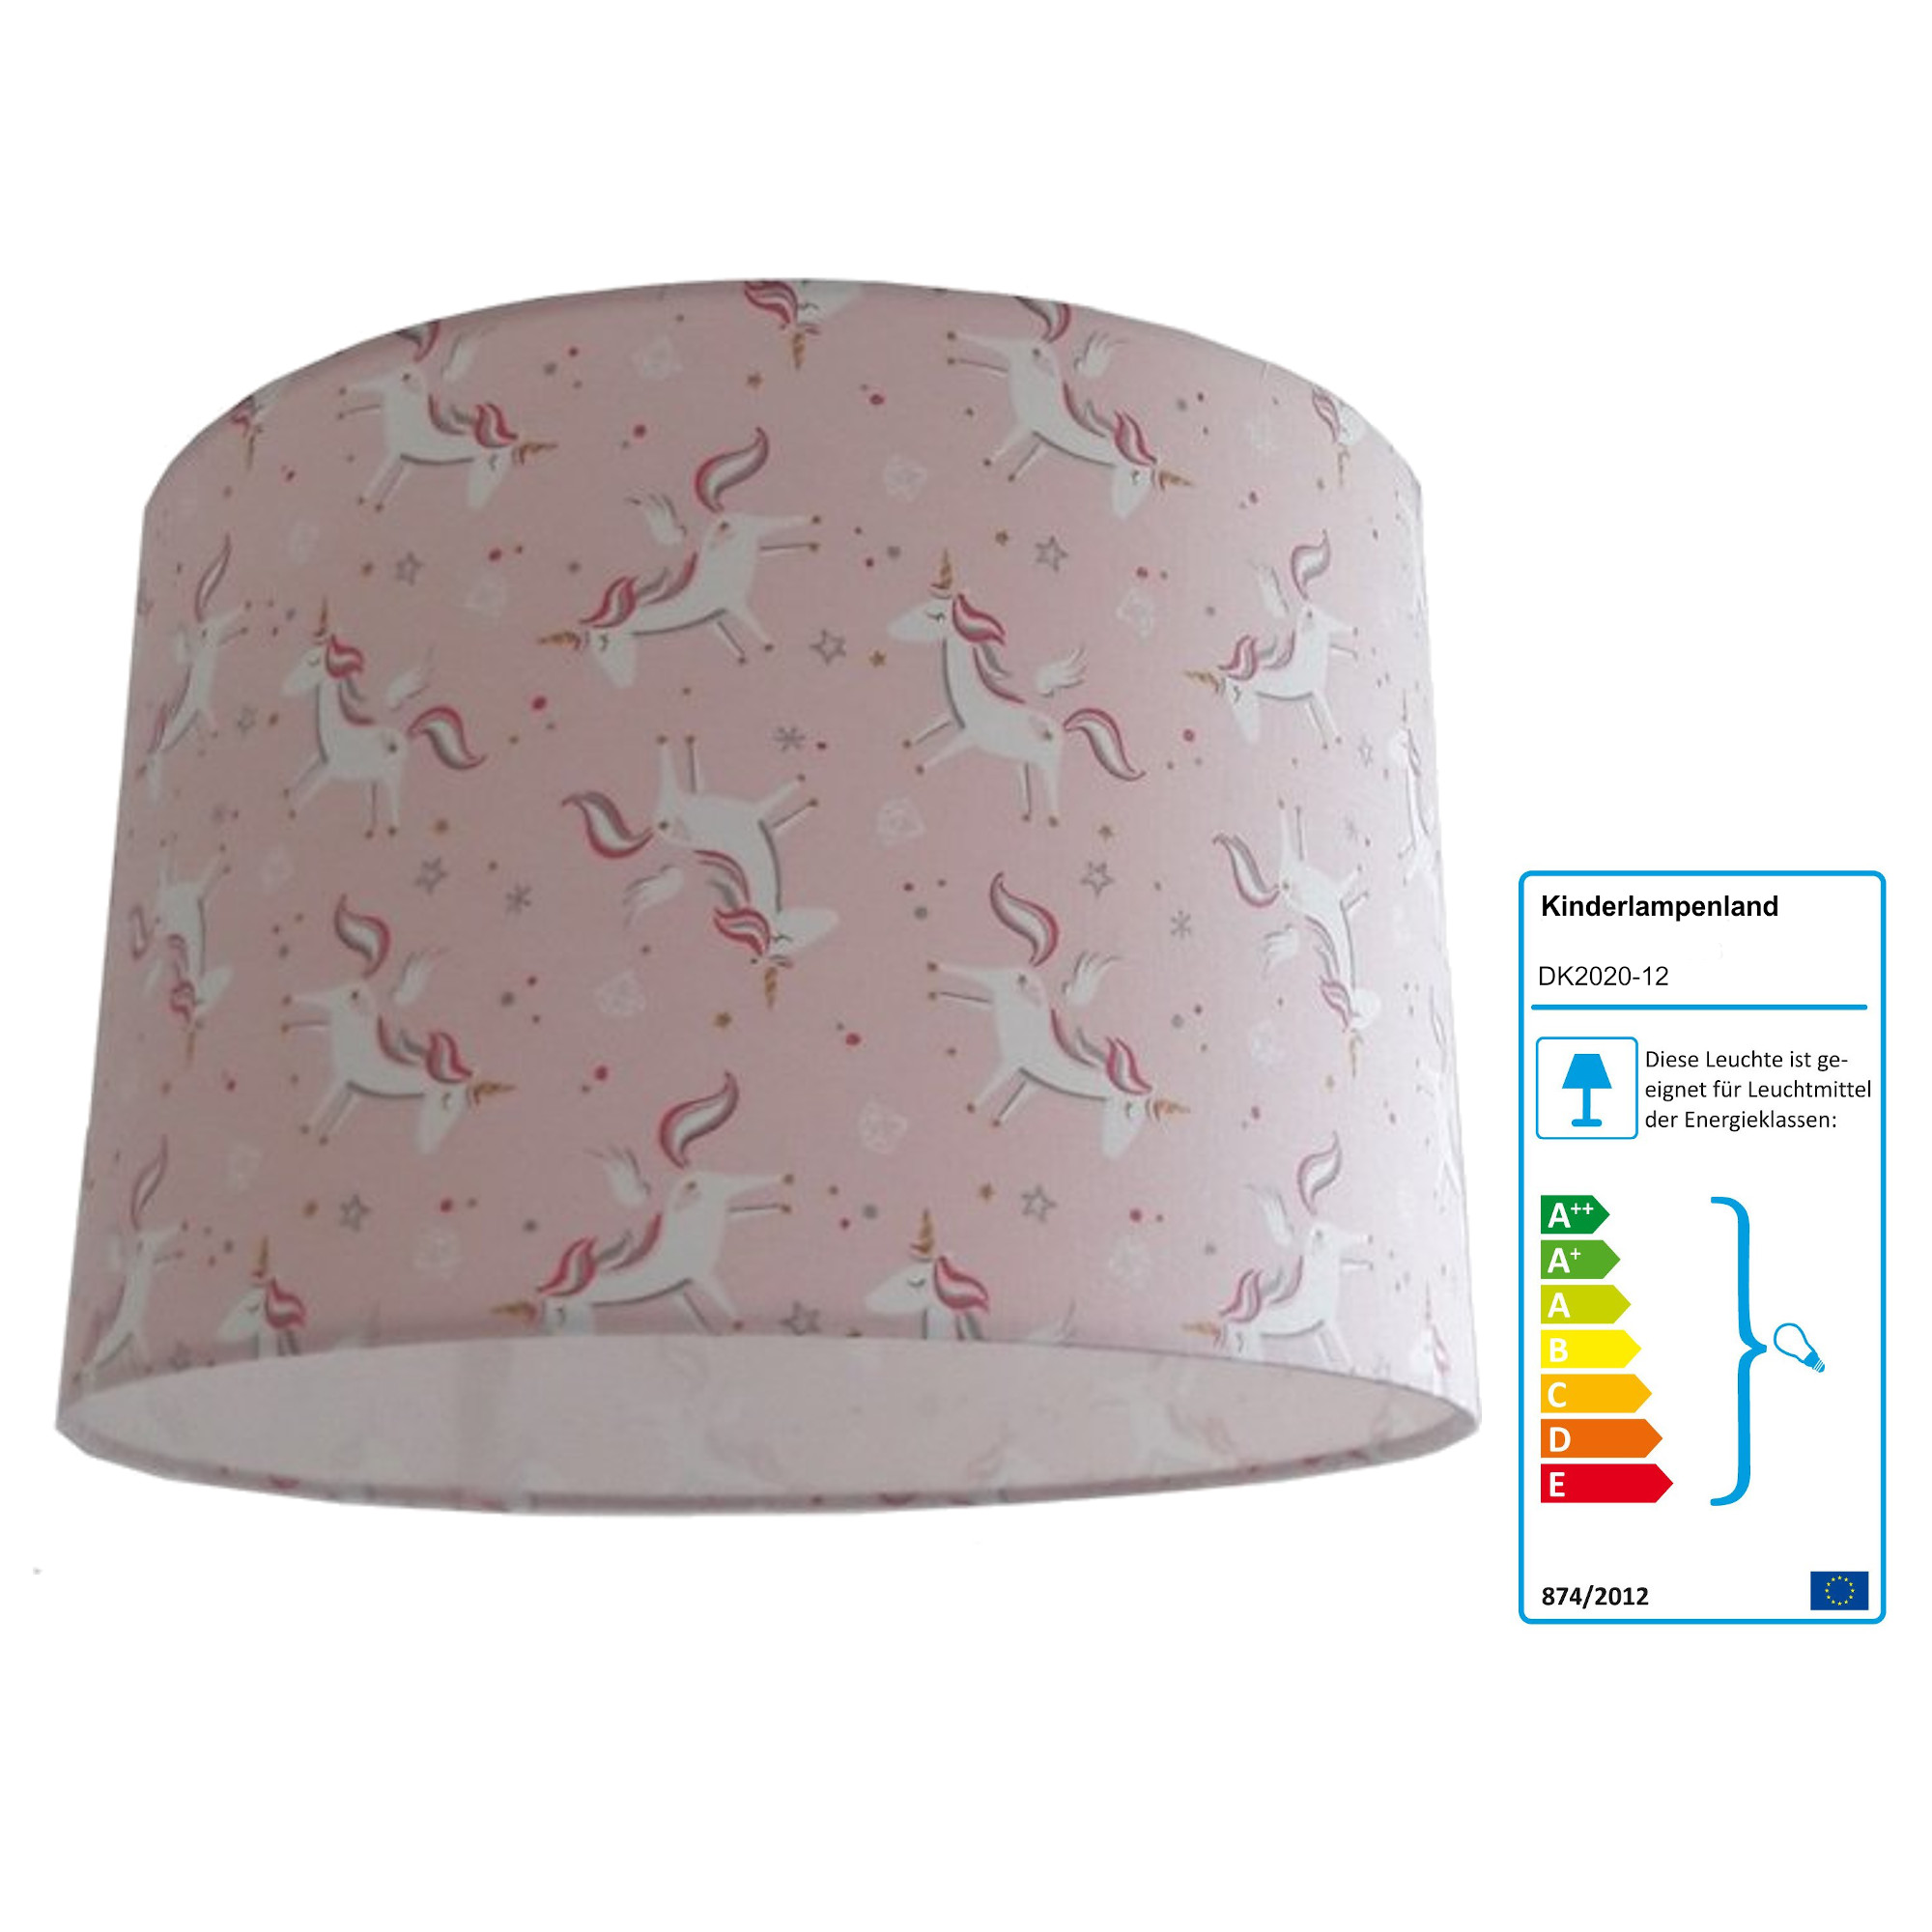 Kinderzimmerlampe Einhorn rosa | Pendelleuchten mit Stoff bezogen |  kinderlampenland.de